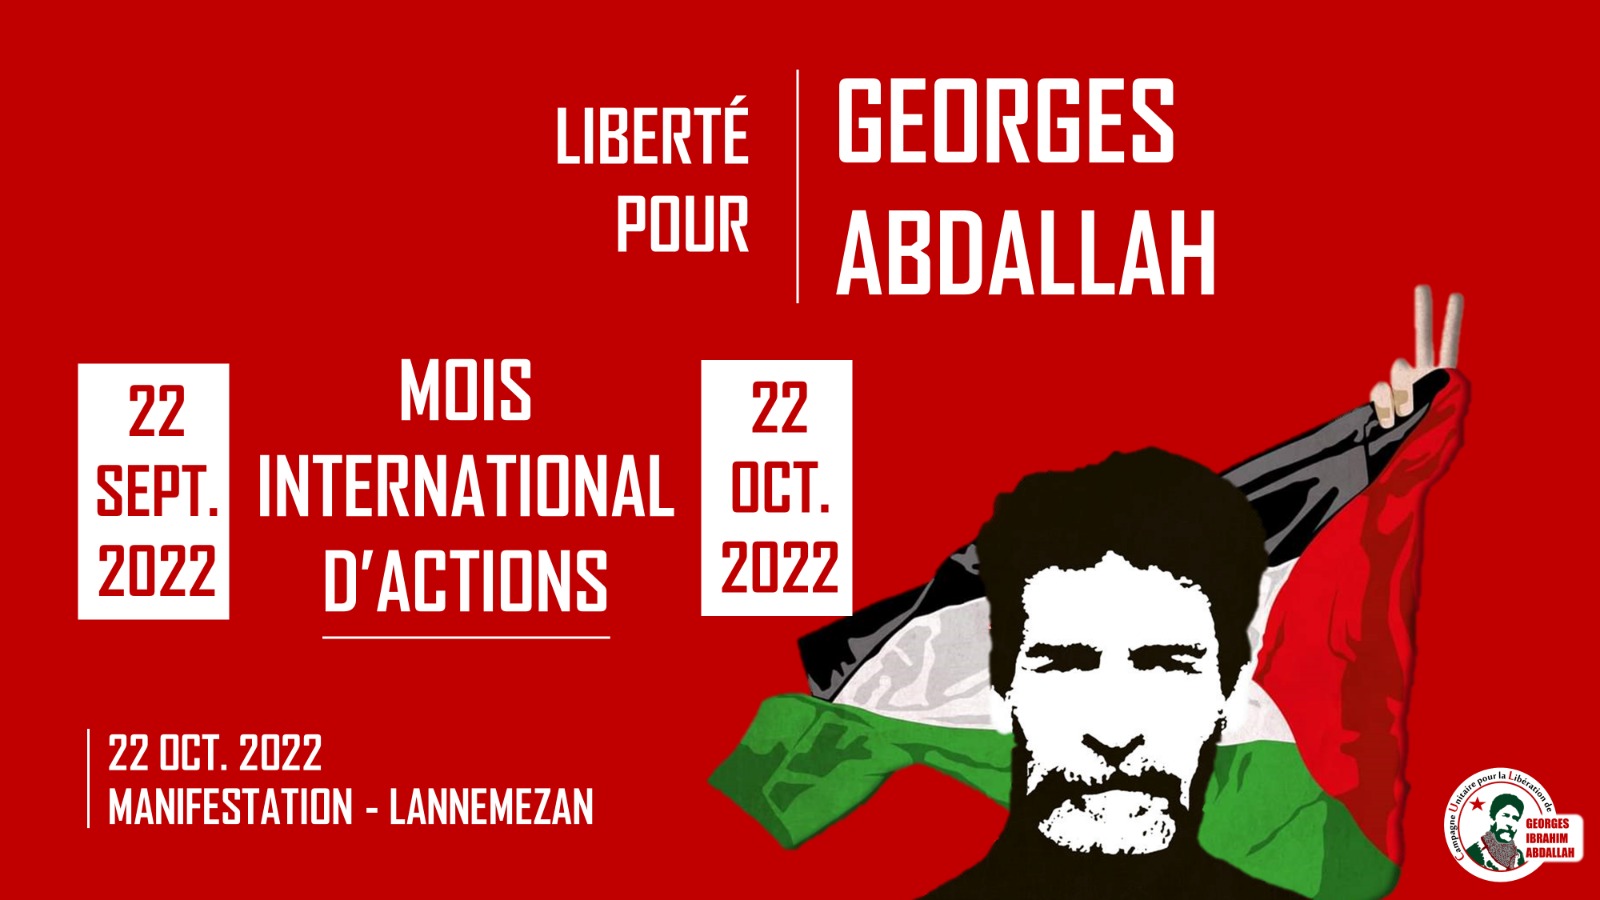 Liberté pour Georges ABDALLAH